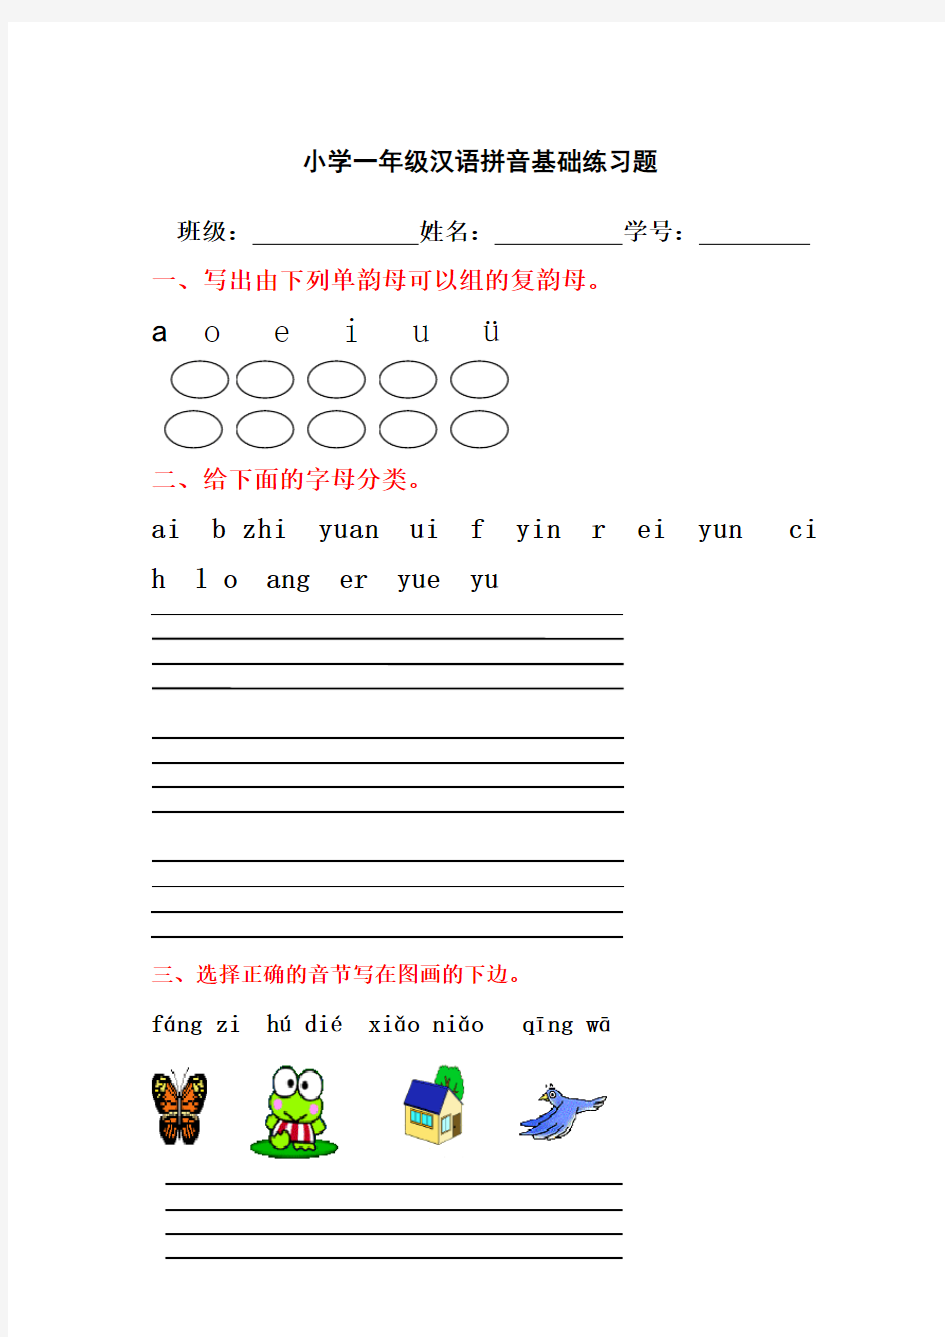 (完整版)学前班一年级汉语拼音基础练习题(合集)